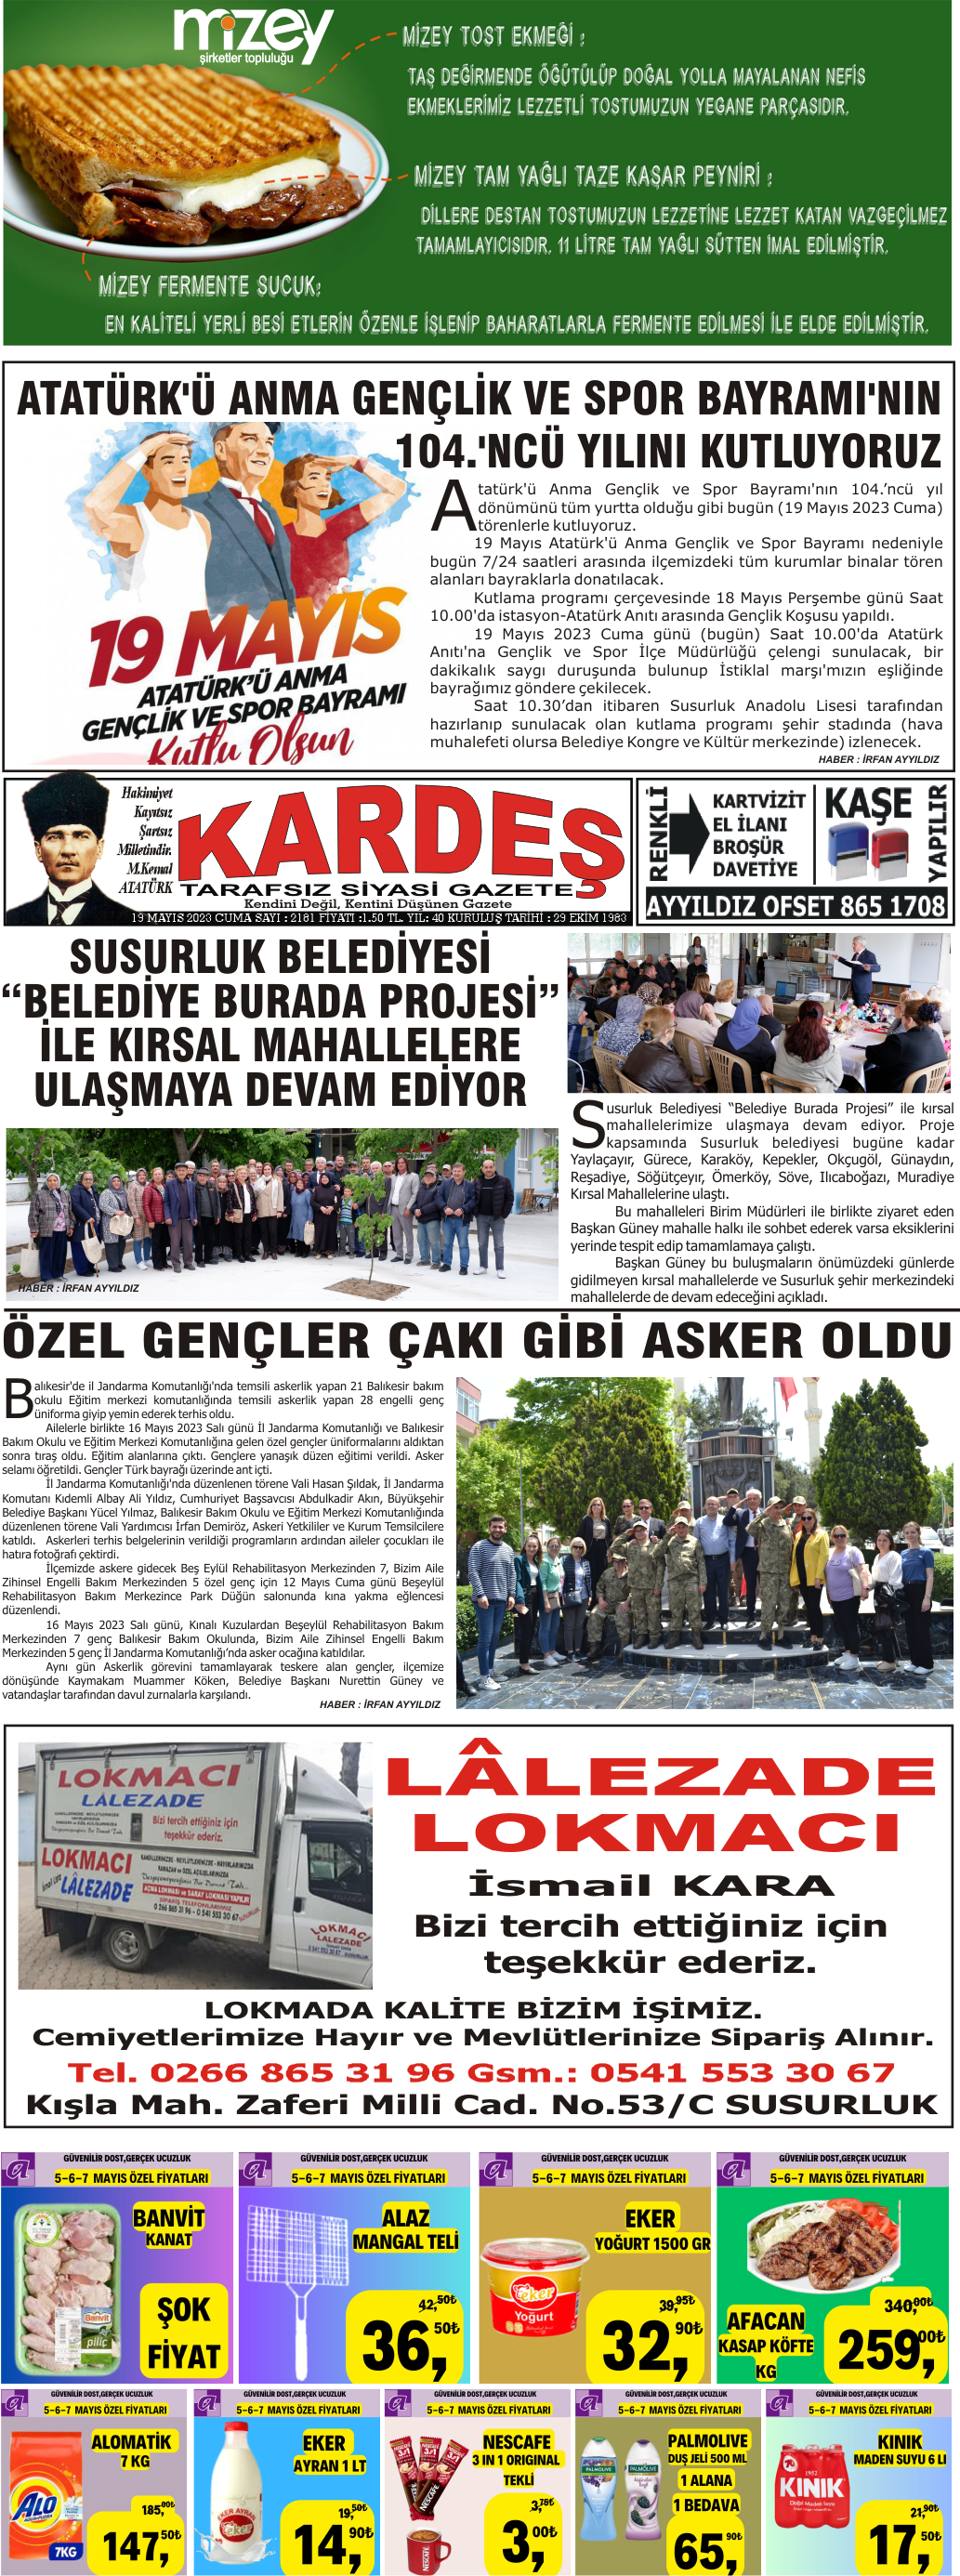 19.05.2023 Tarihli Kardeş Gazetesi